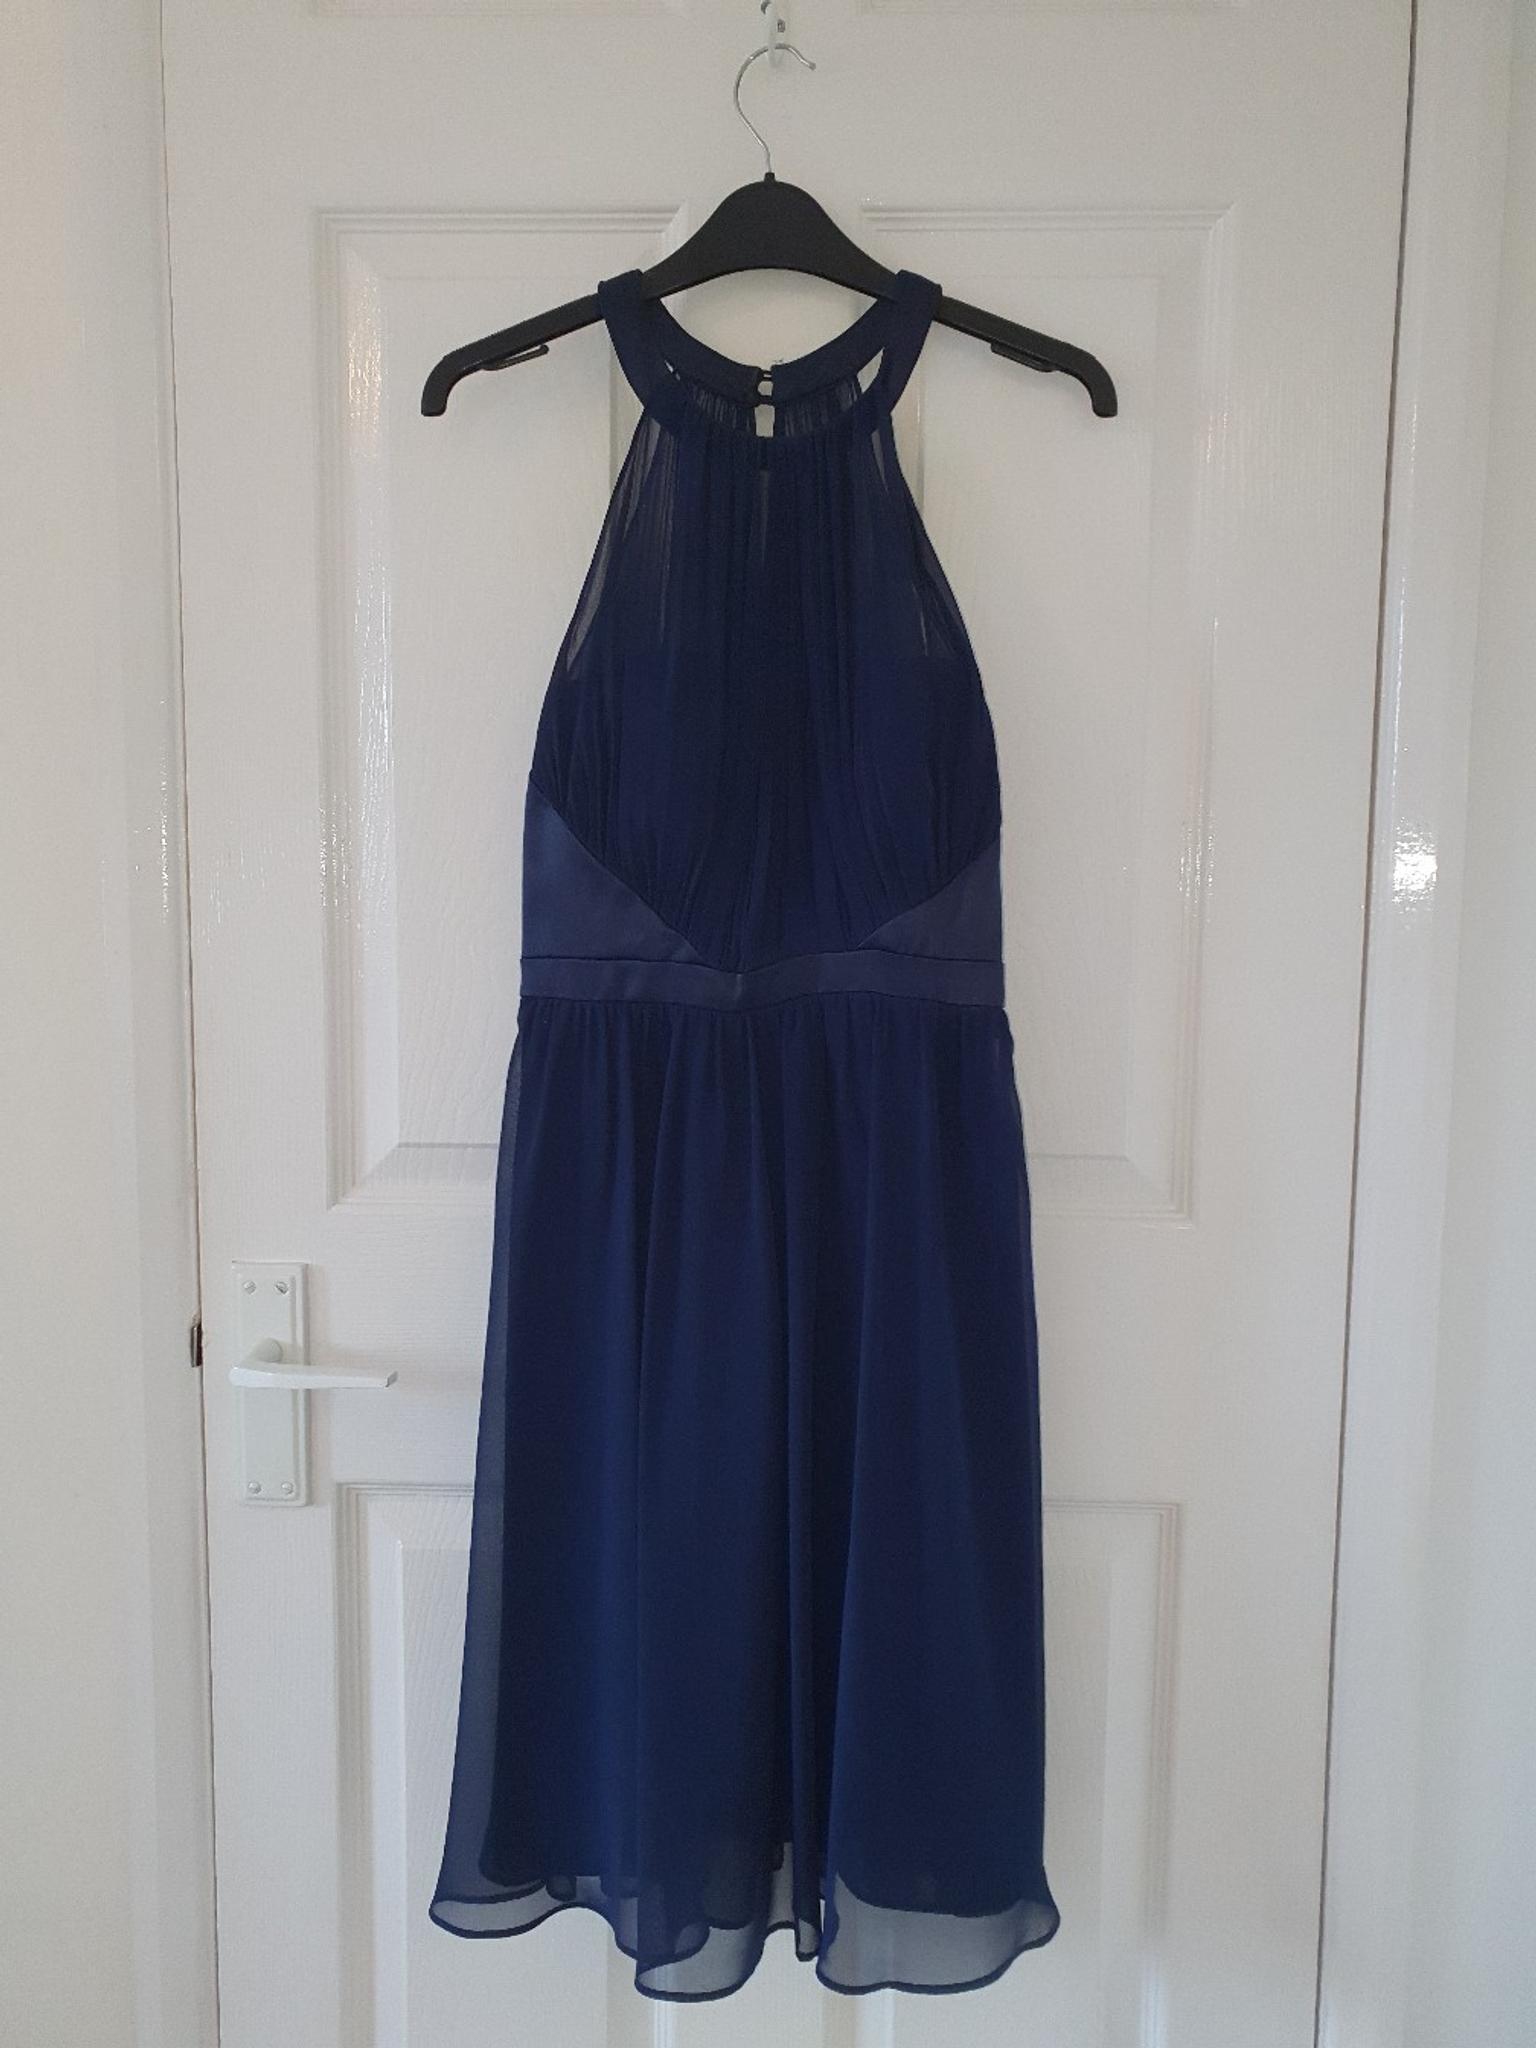 navy blue dress size 10